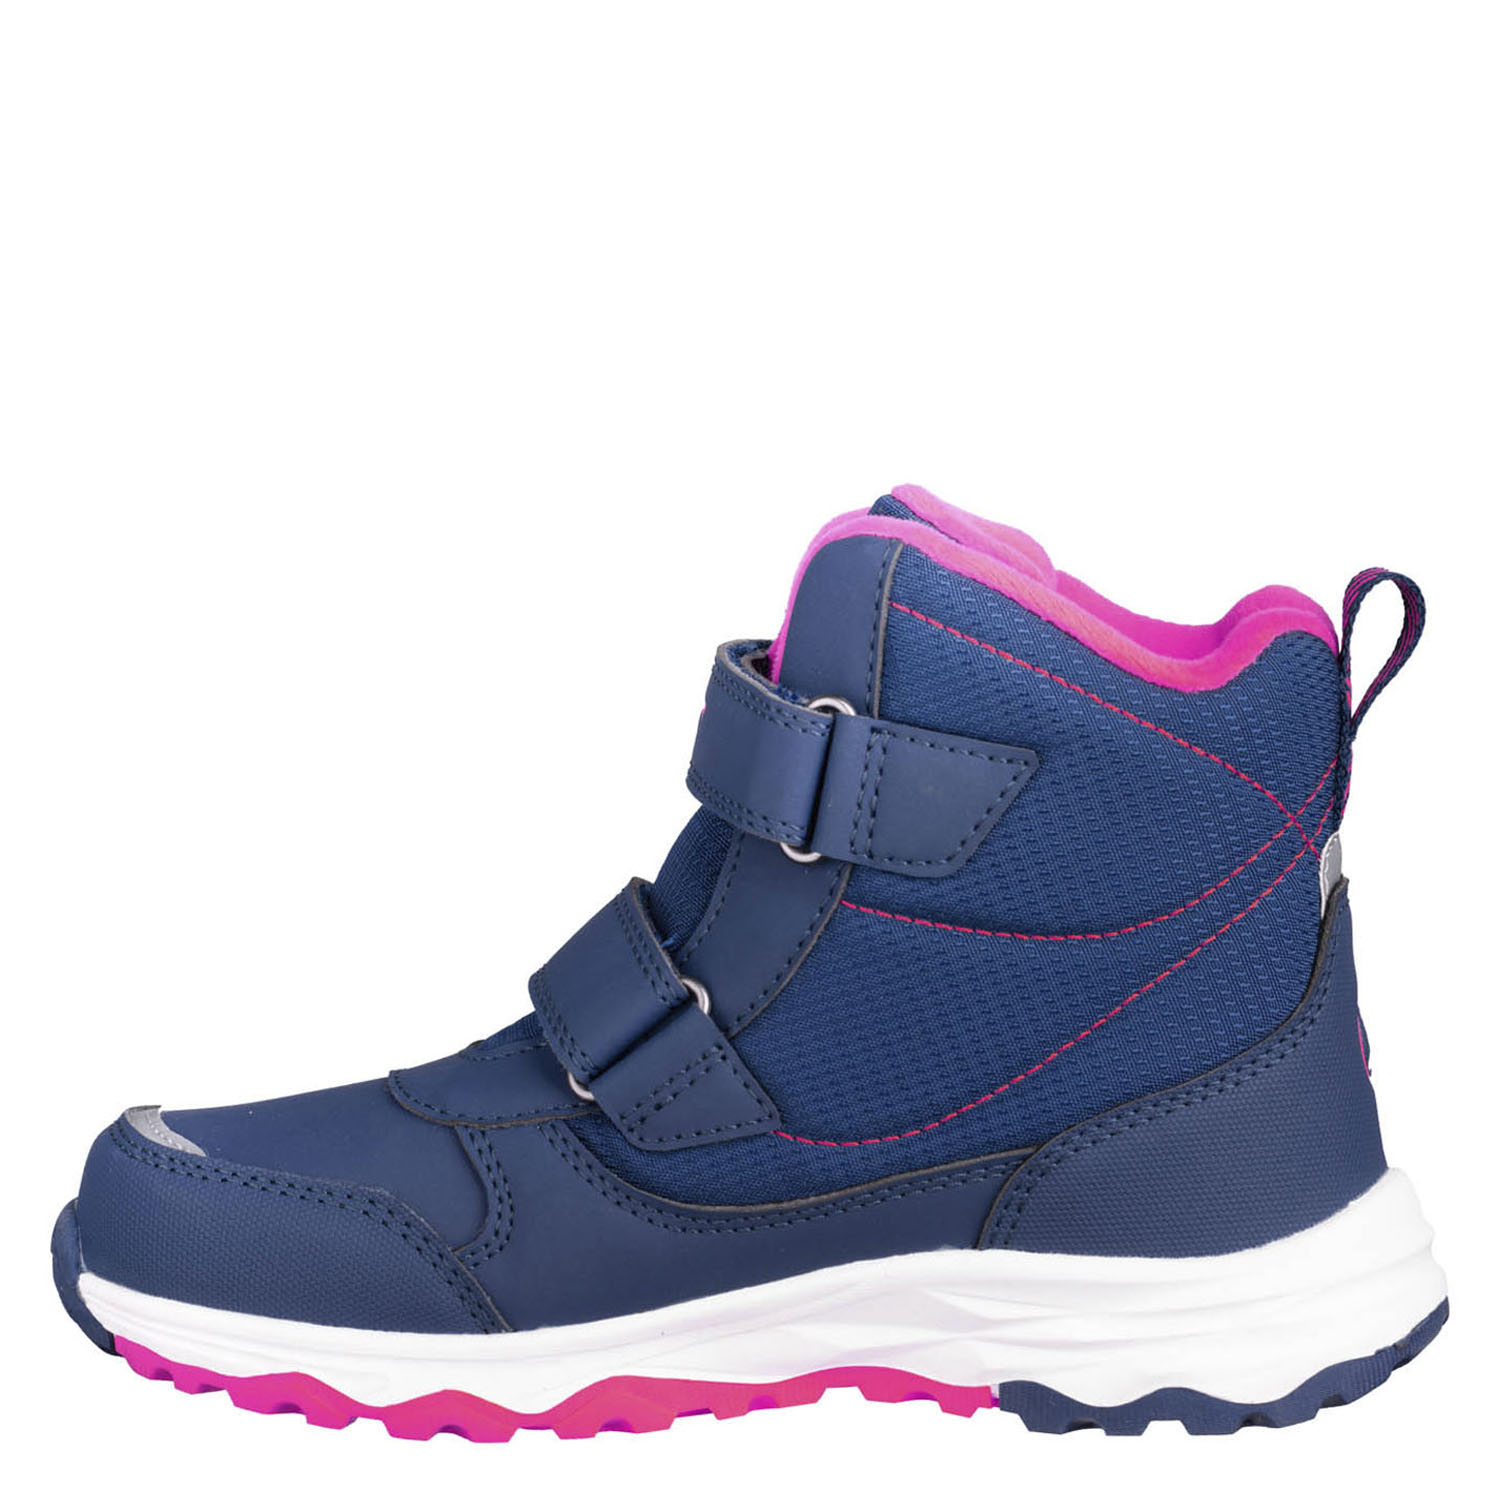 Ботинки детские Trollkids Kids Hafjell Winter Boots Navy/Pink